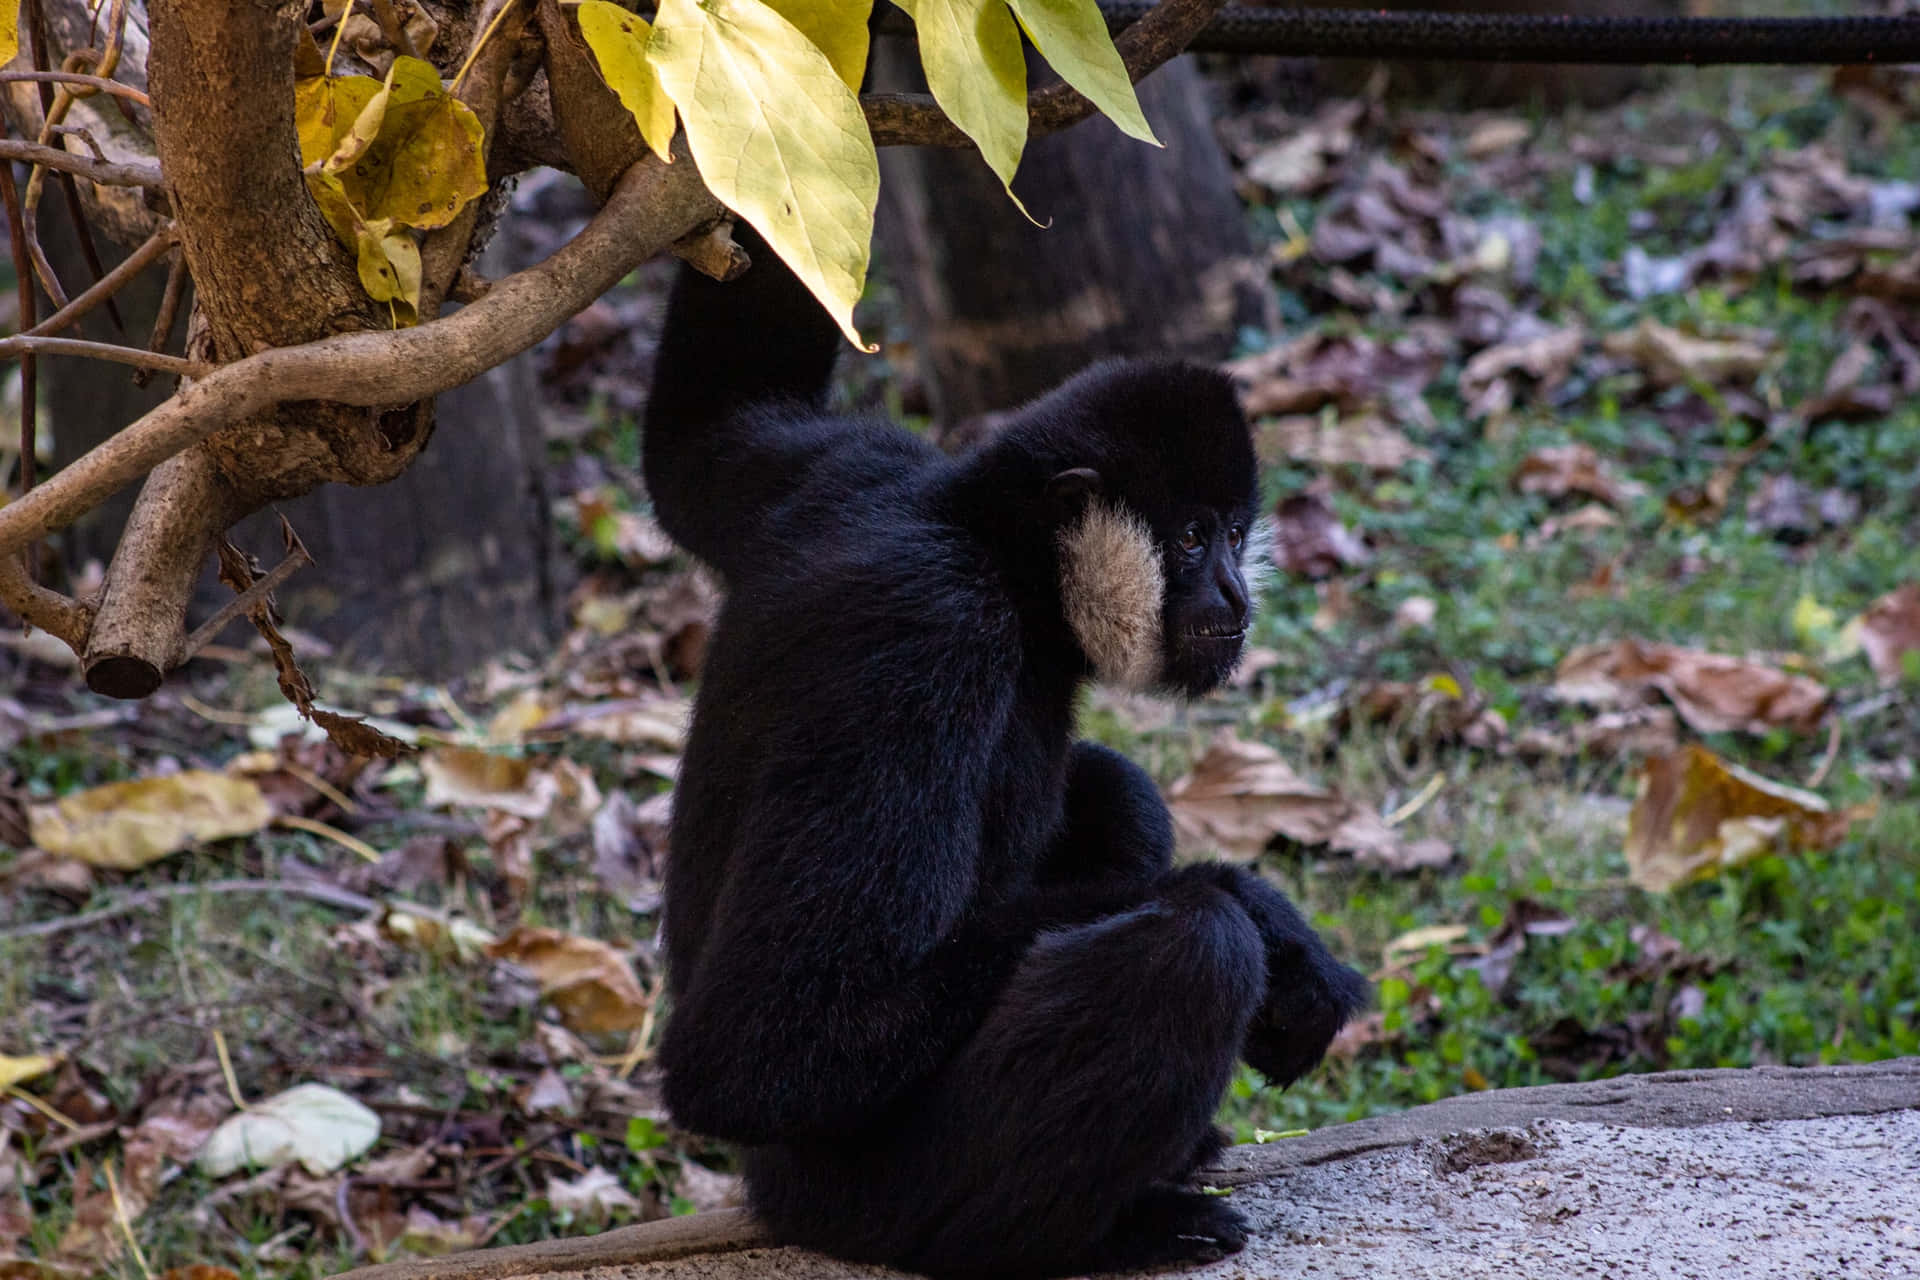 Majestic Gibbon in Natural Habitat